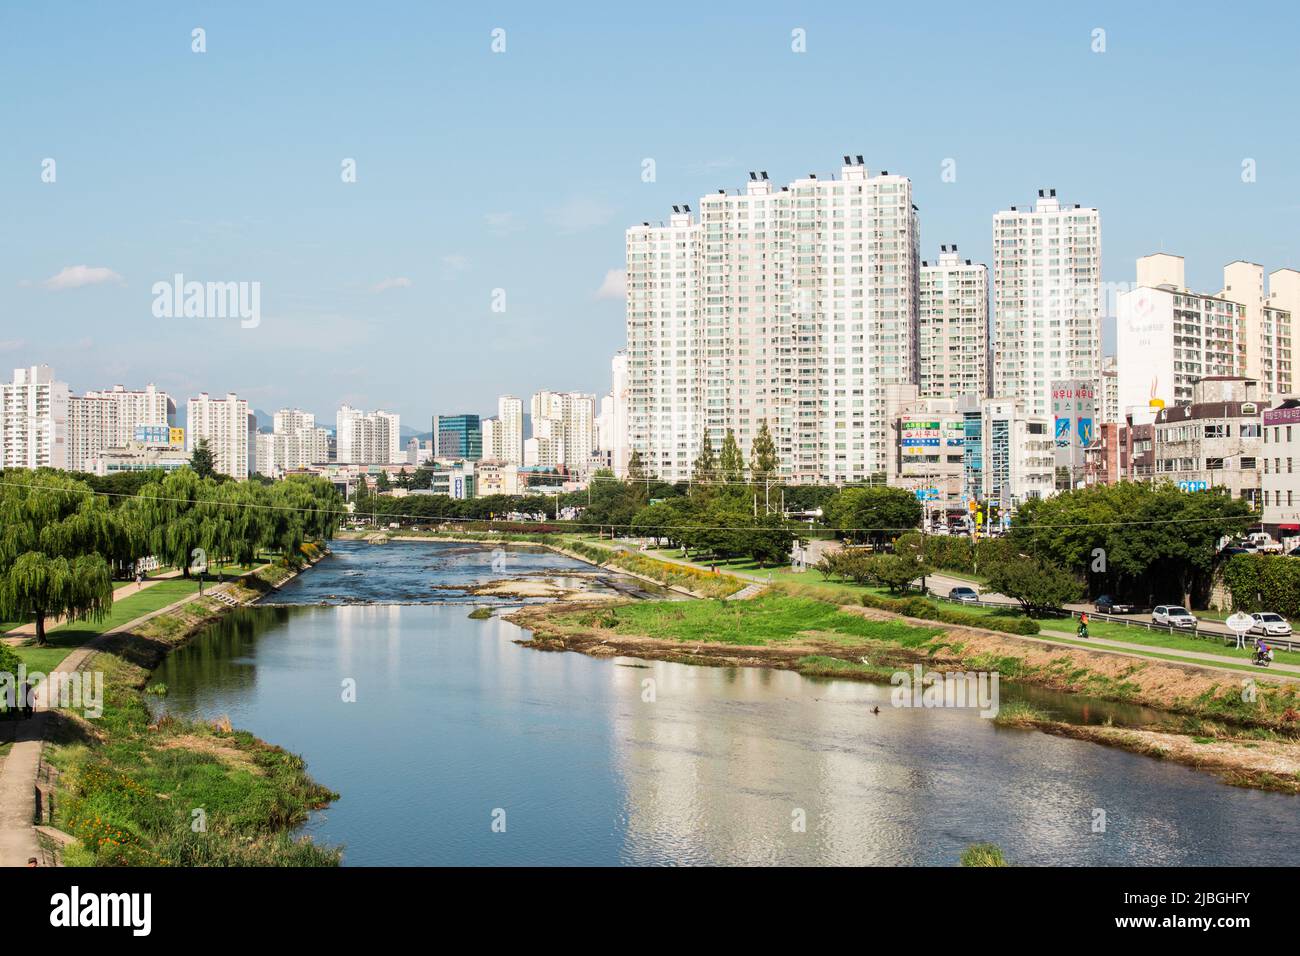 Daegu, Corée du Sud - 22 septembre 2018 : centre-ville et rivière Sincheon. Daegu est une grande ville industrielle (Samsung et Kolon ont été fondés) Banque D'Images